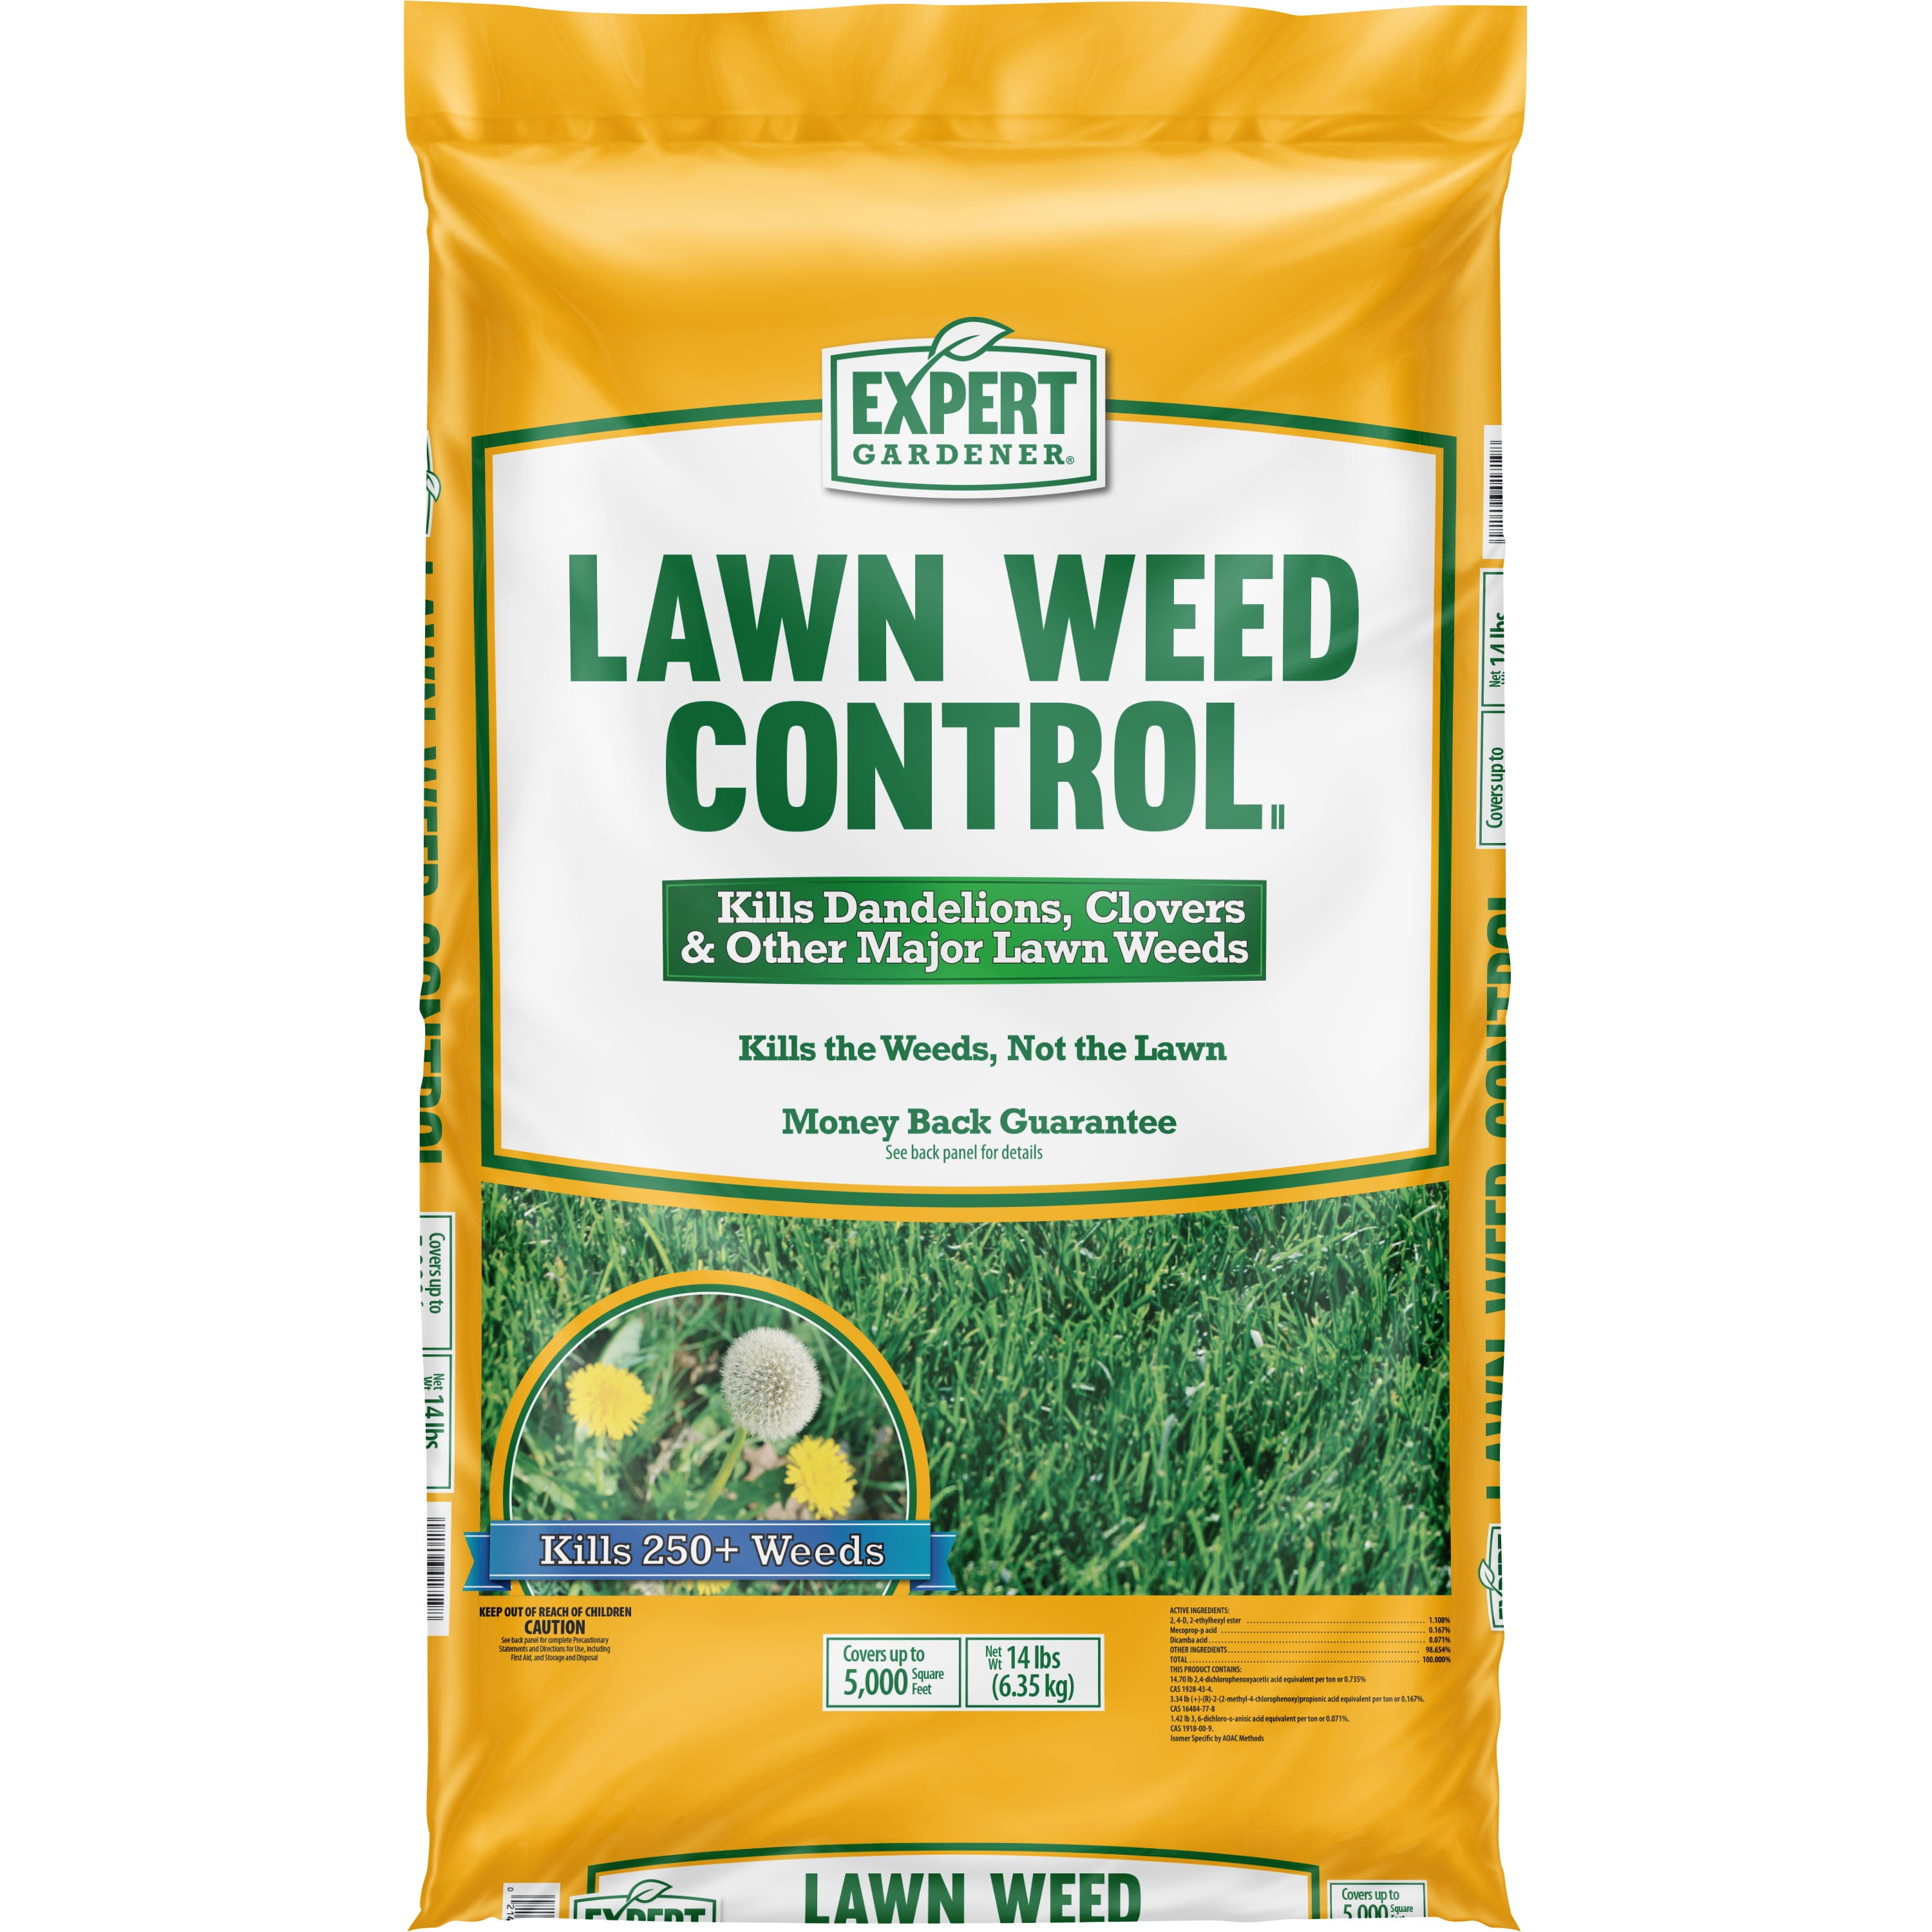 Expert Gardener Lawn Weed Control II Granule Herbicide, Covers 5,000 sq